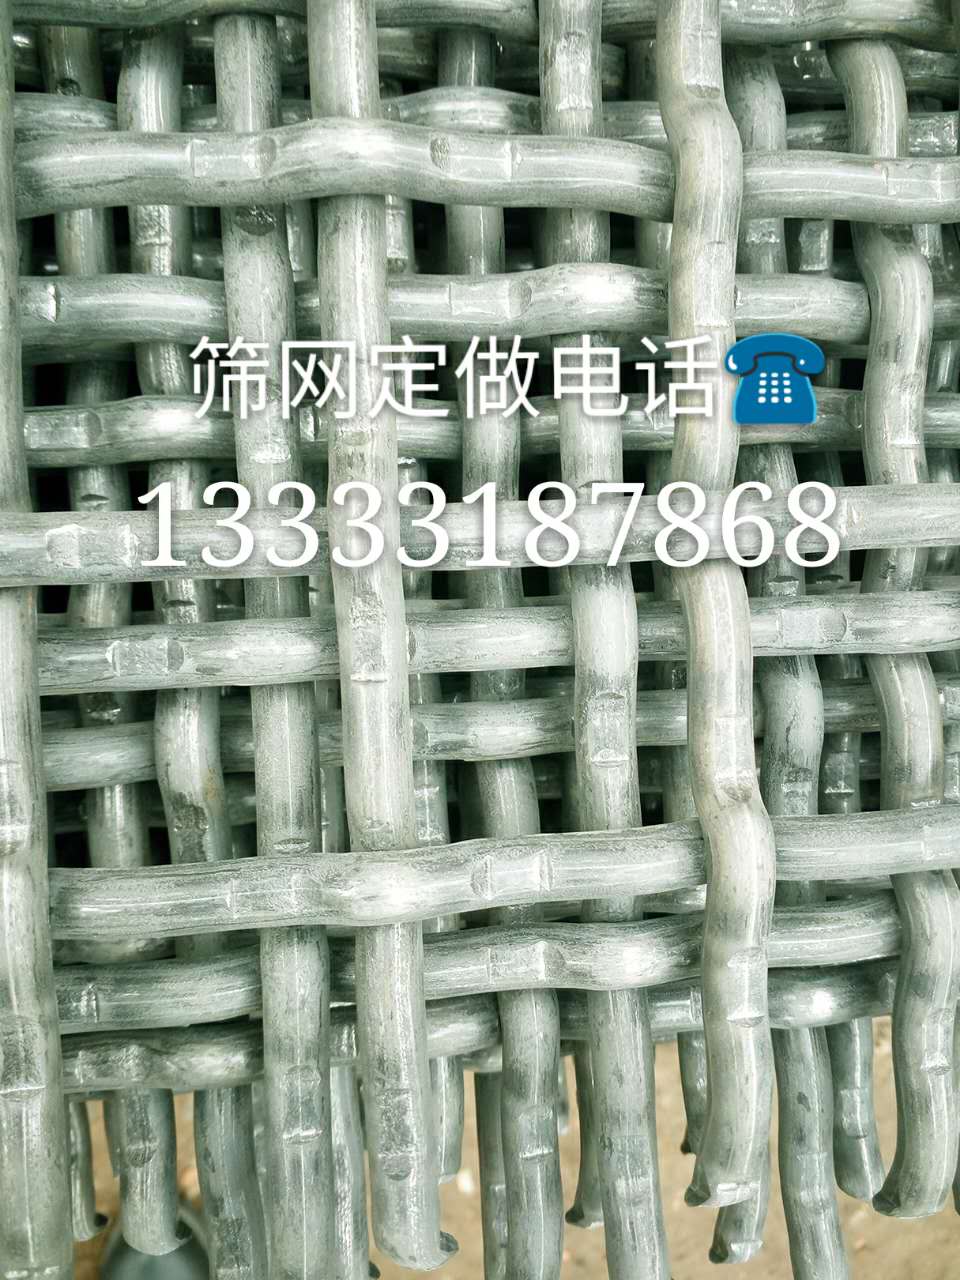 广东不锈钢轧花网供应 佛山不锈钢轧花网供应哪里有 广州不锈钢轧花网供应